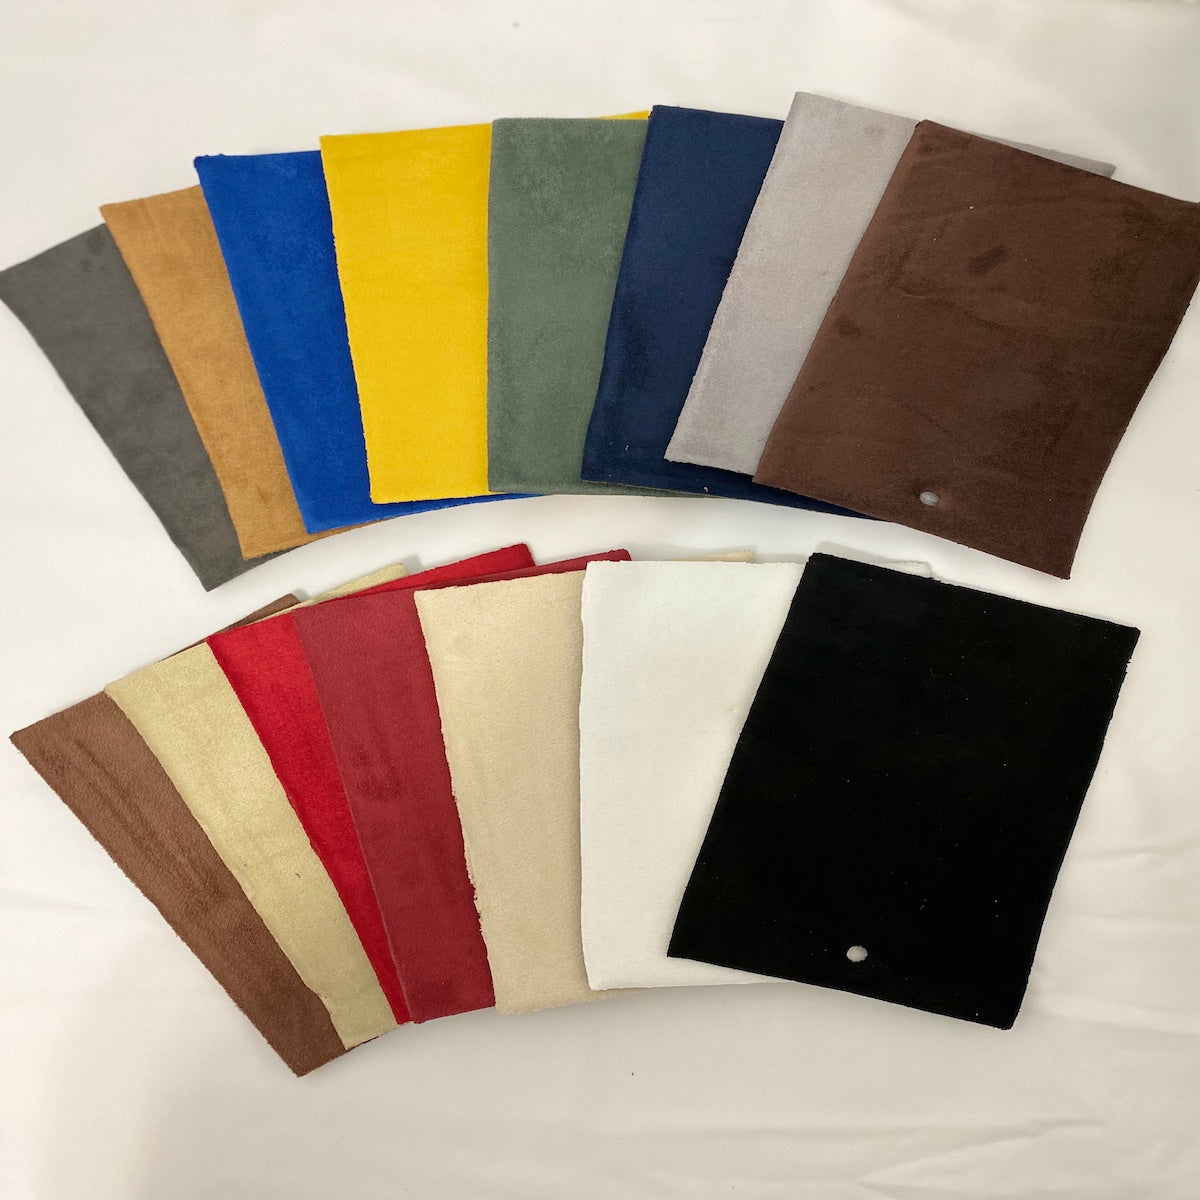 Louis Vuitton Dust Bag 10 Set Brown Beige 100% Cotton Auction